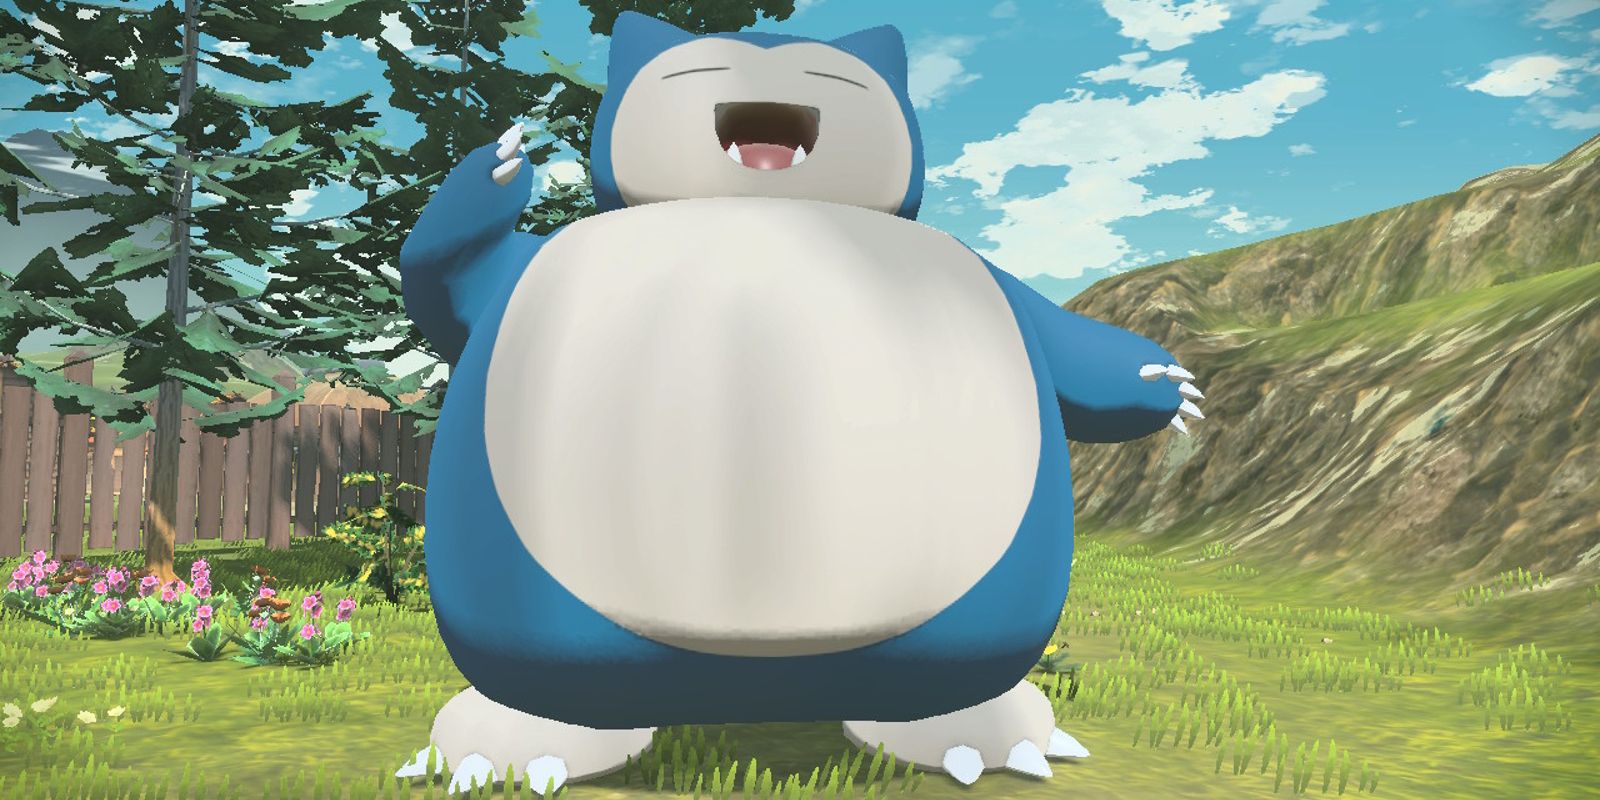 Increíble Pokémon GO Encounter le da a Snorlax Bidoof pantuflas